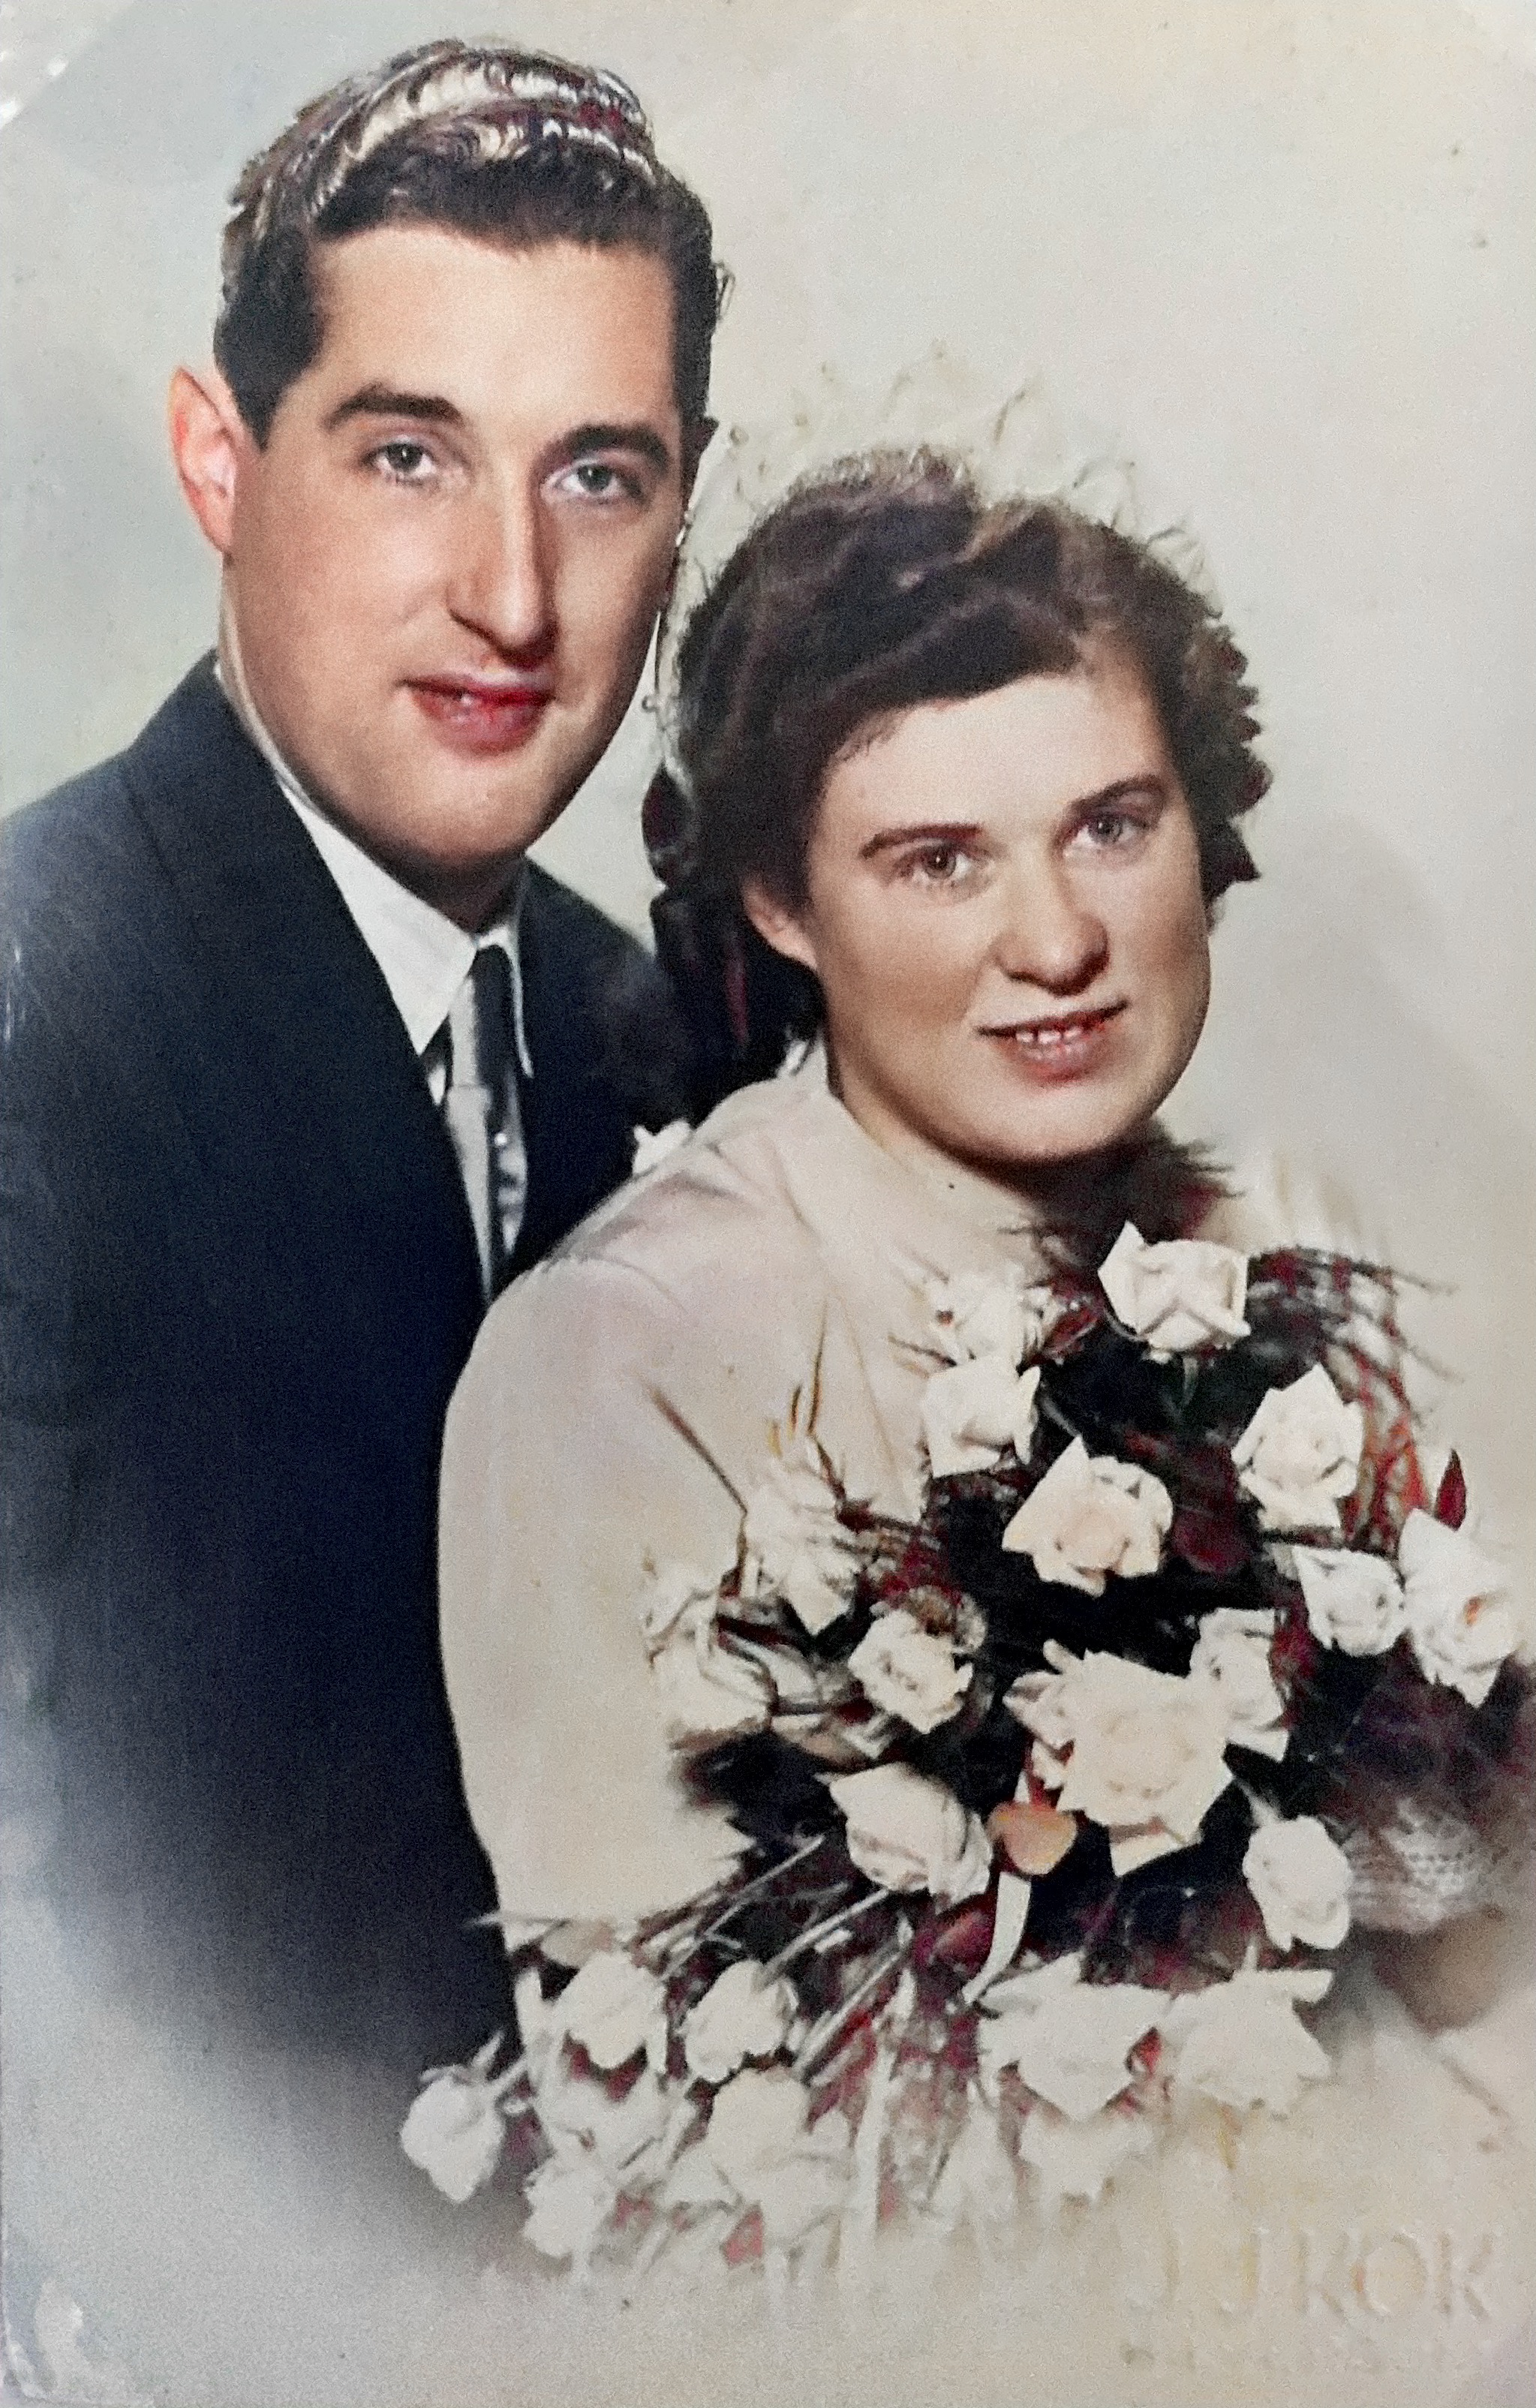 Trouwfoto van mijn ouders Pierre en Corrie 1949
